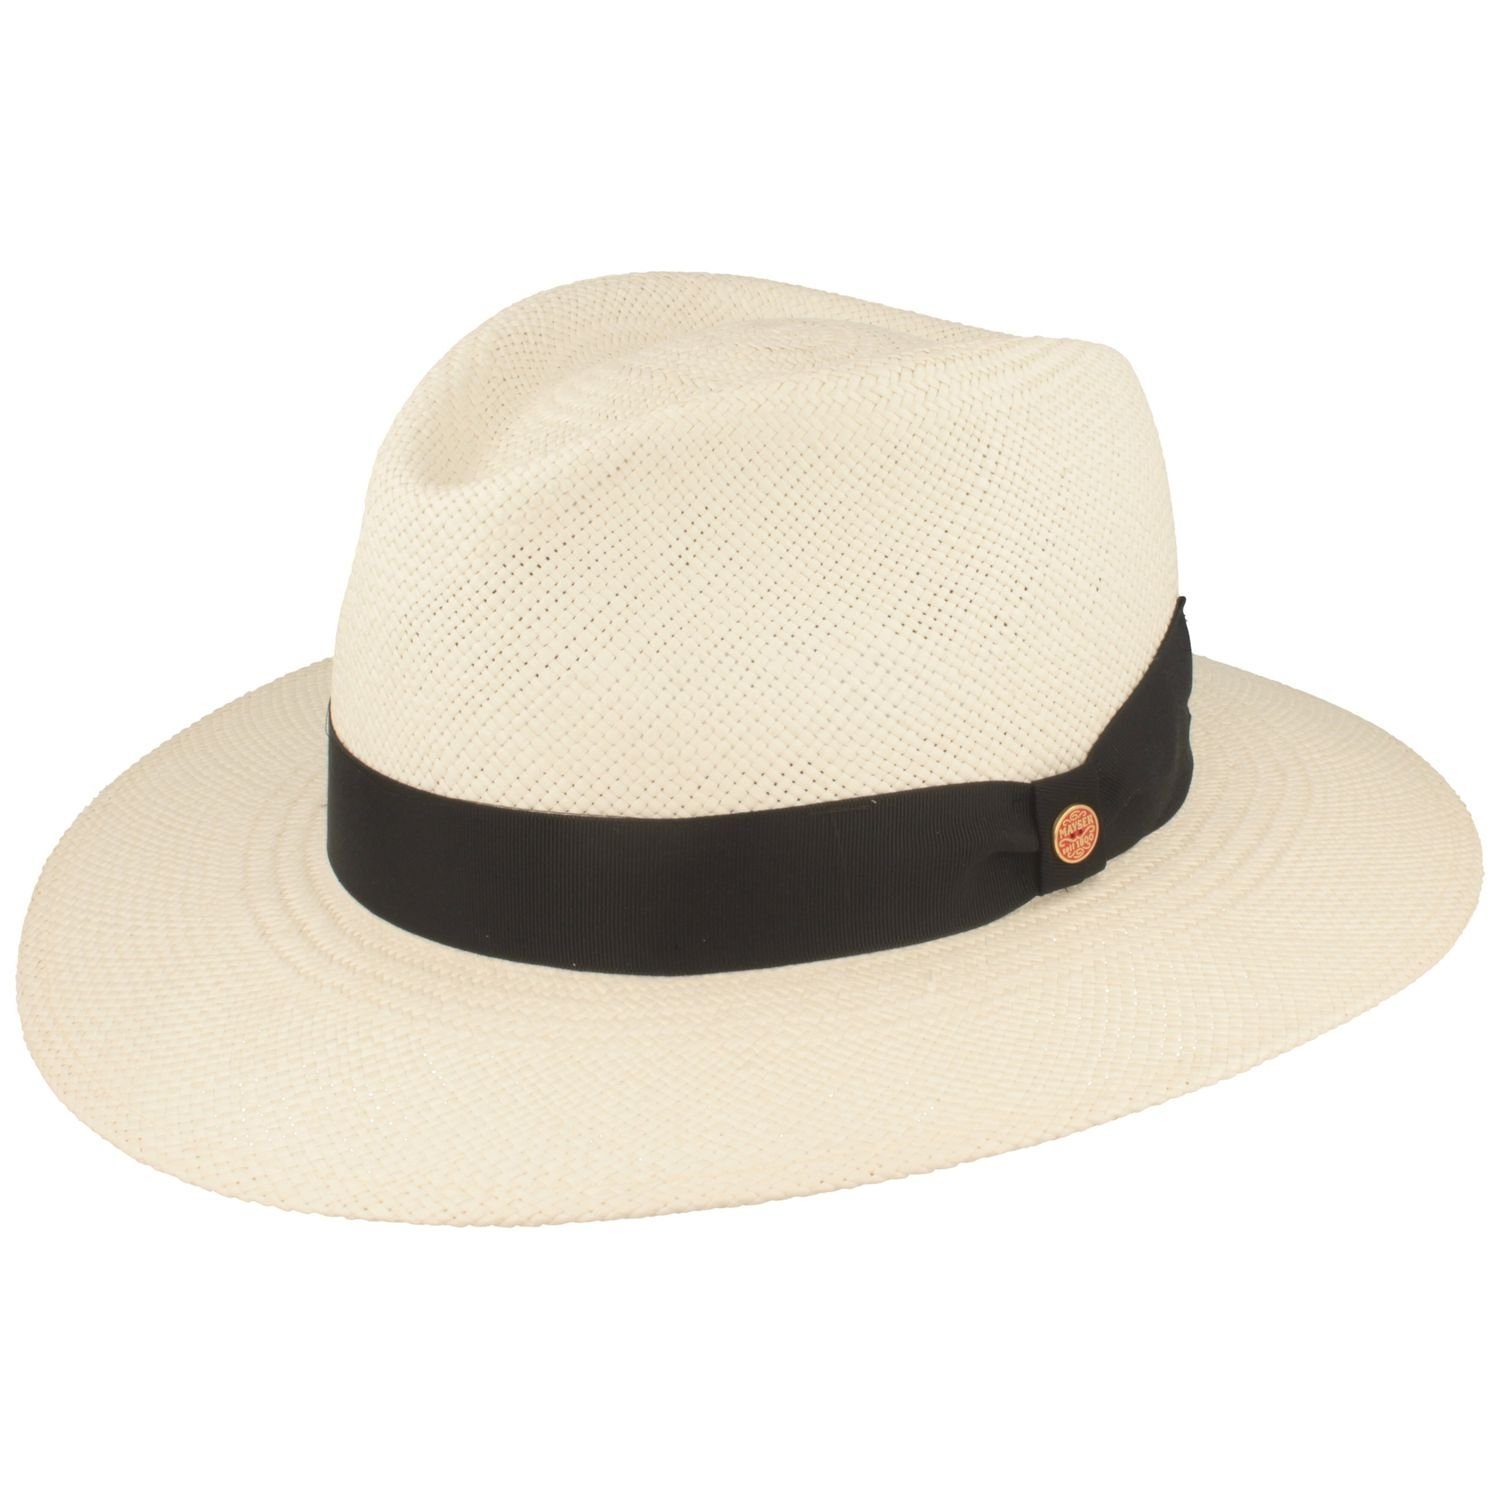 Mayser Strohhut 60 Tarbes mit 0025 Hut 80 bzw. UV-Schutz wasserabweisender Panama bleached